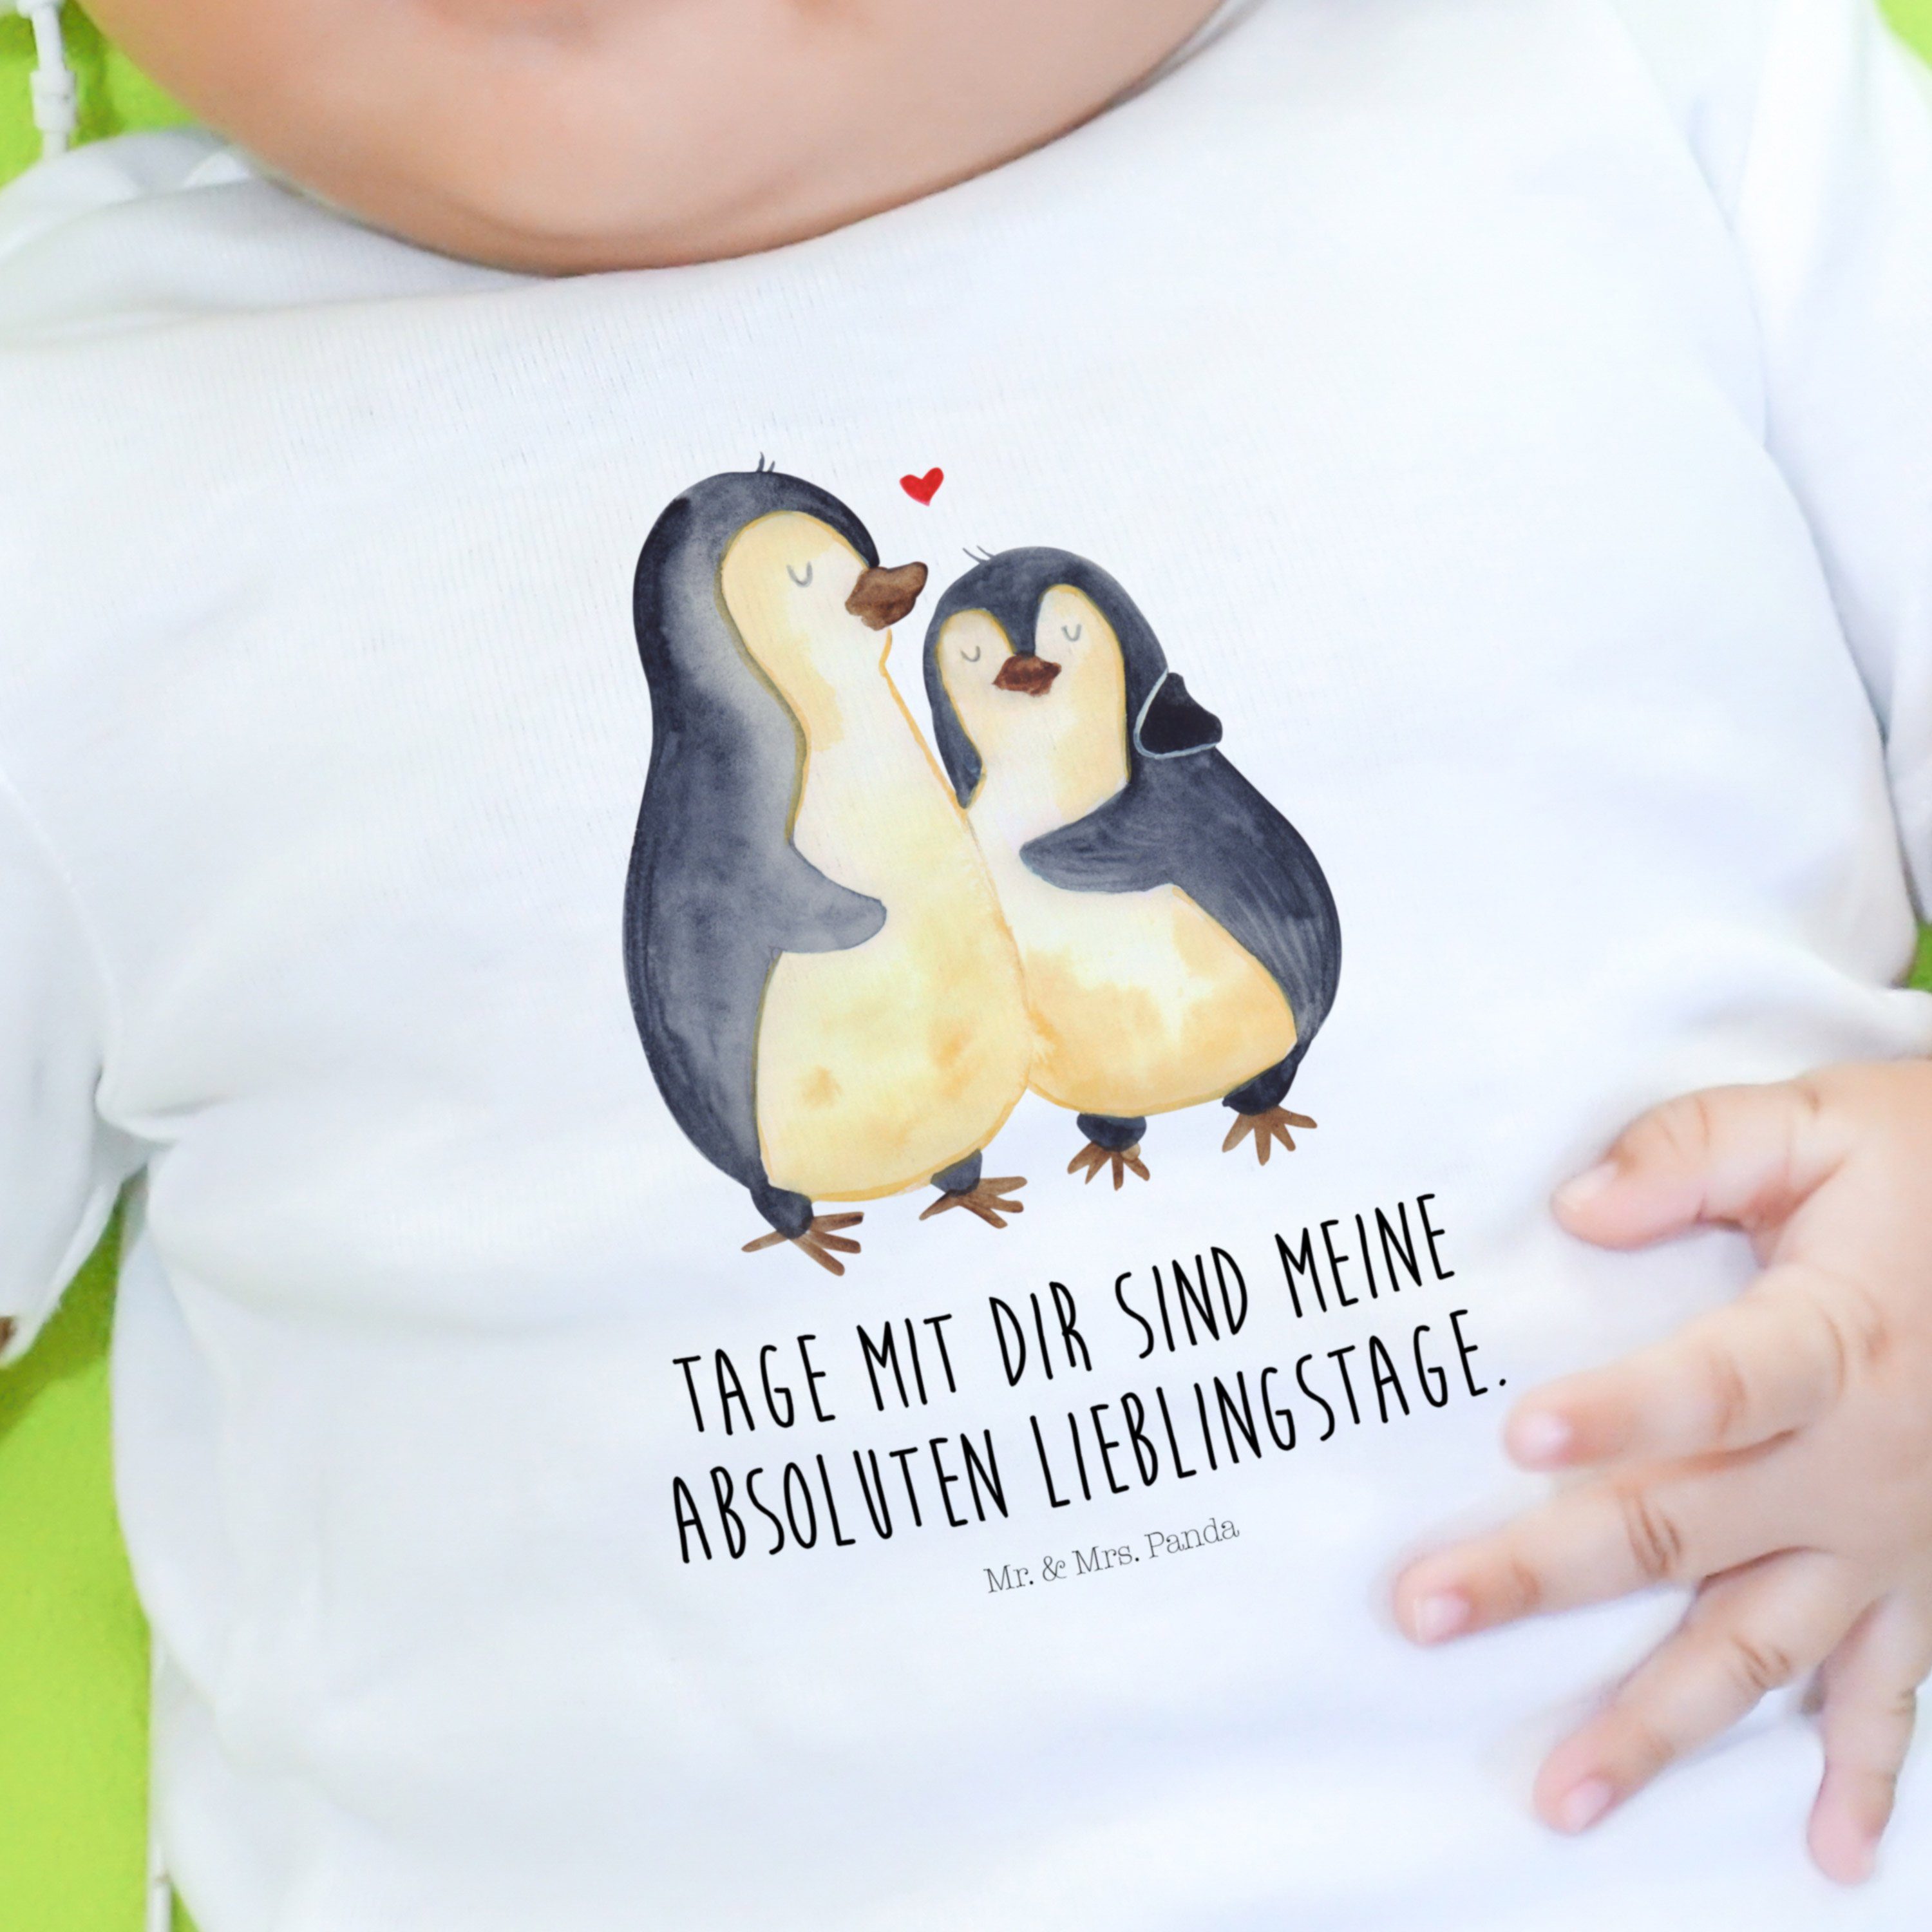 Mr. & Mrs. Panda Pinguin Bio, Geschenk, Jungen, Weiß Seevogel, Strampler - umarmend - (1-tlg) Jahrestag